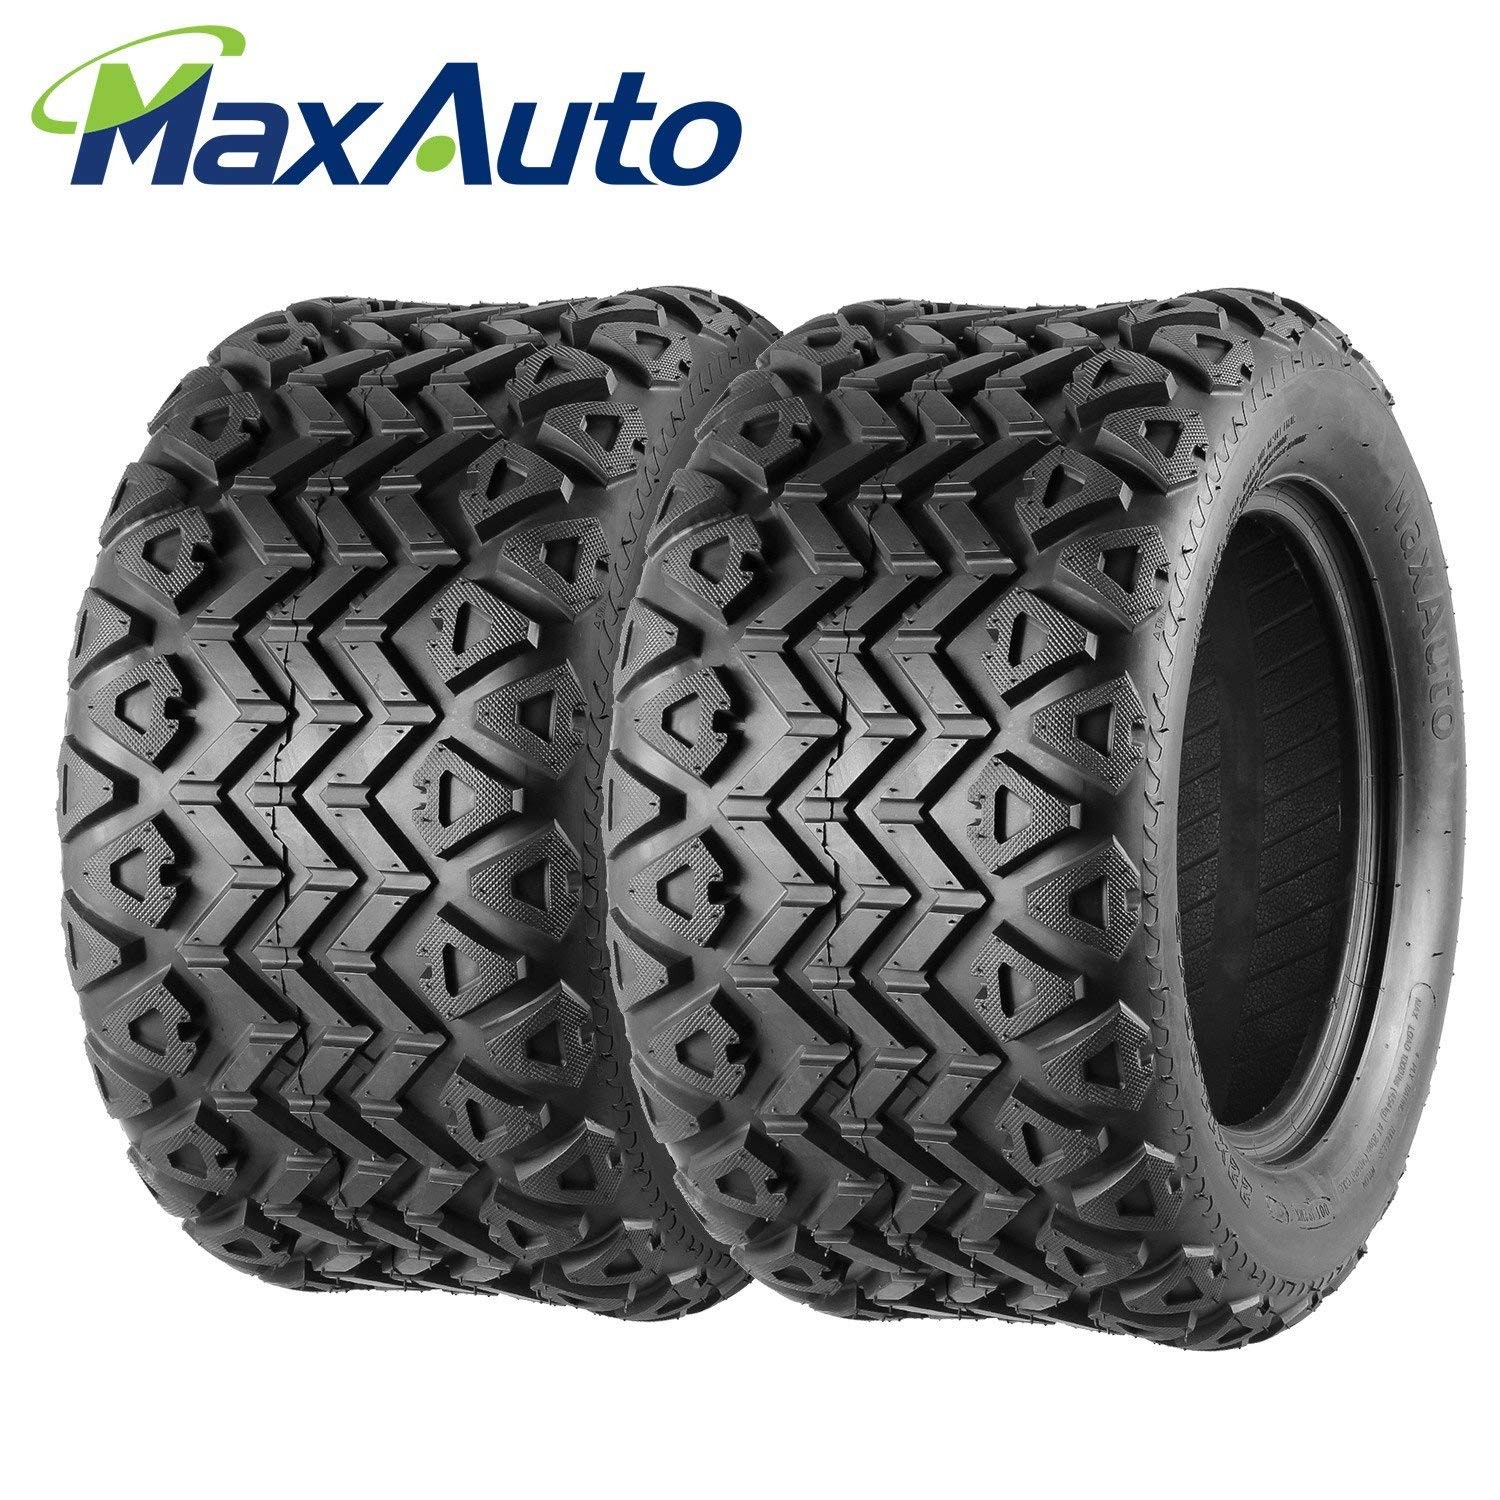 Rotate Radial Tires Diagram Amazon Maxauto Golf Cart Tires 22×11 12 22 11 12 22x11x12 4ply Of Rotate Radial Tires Diagram